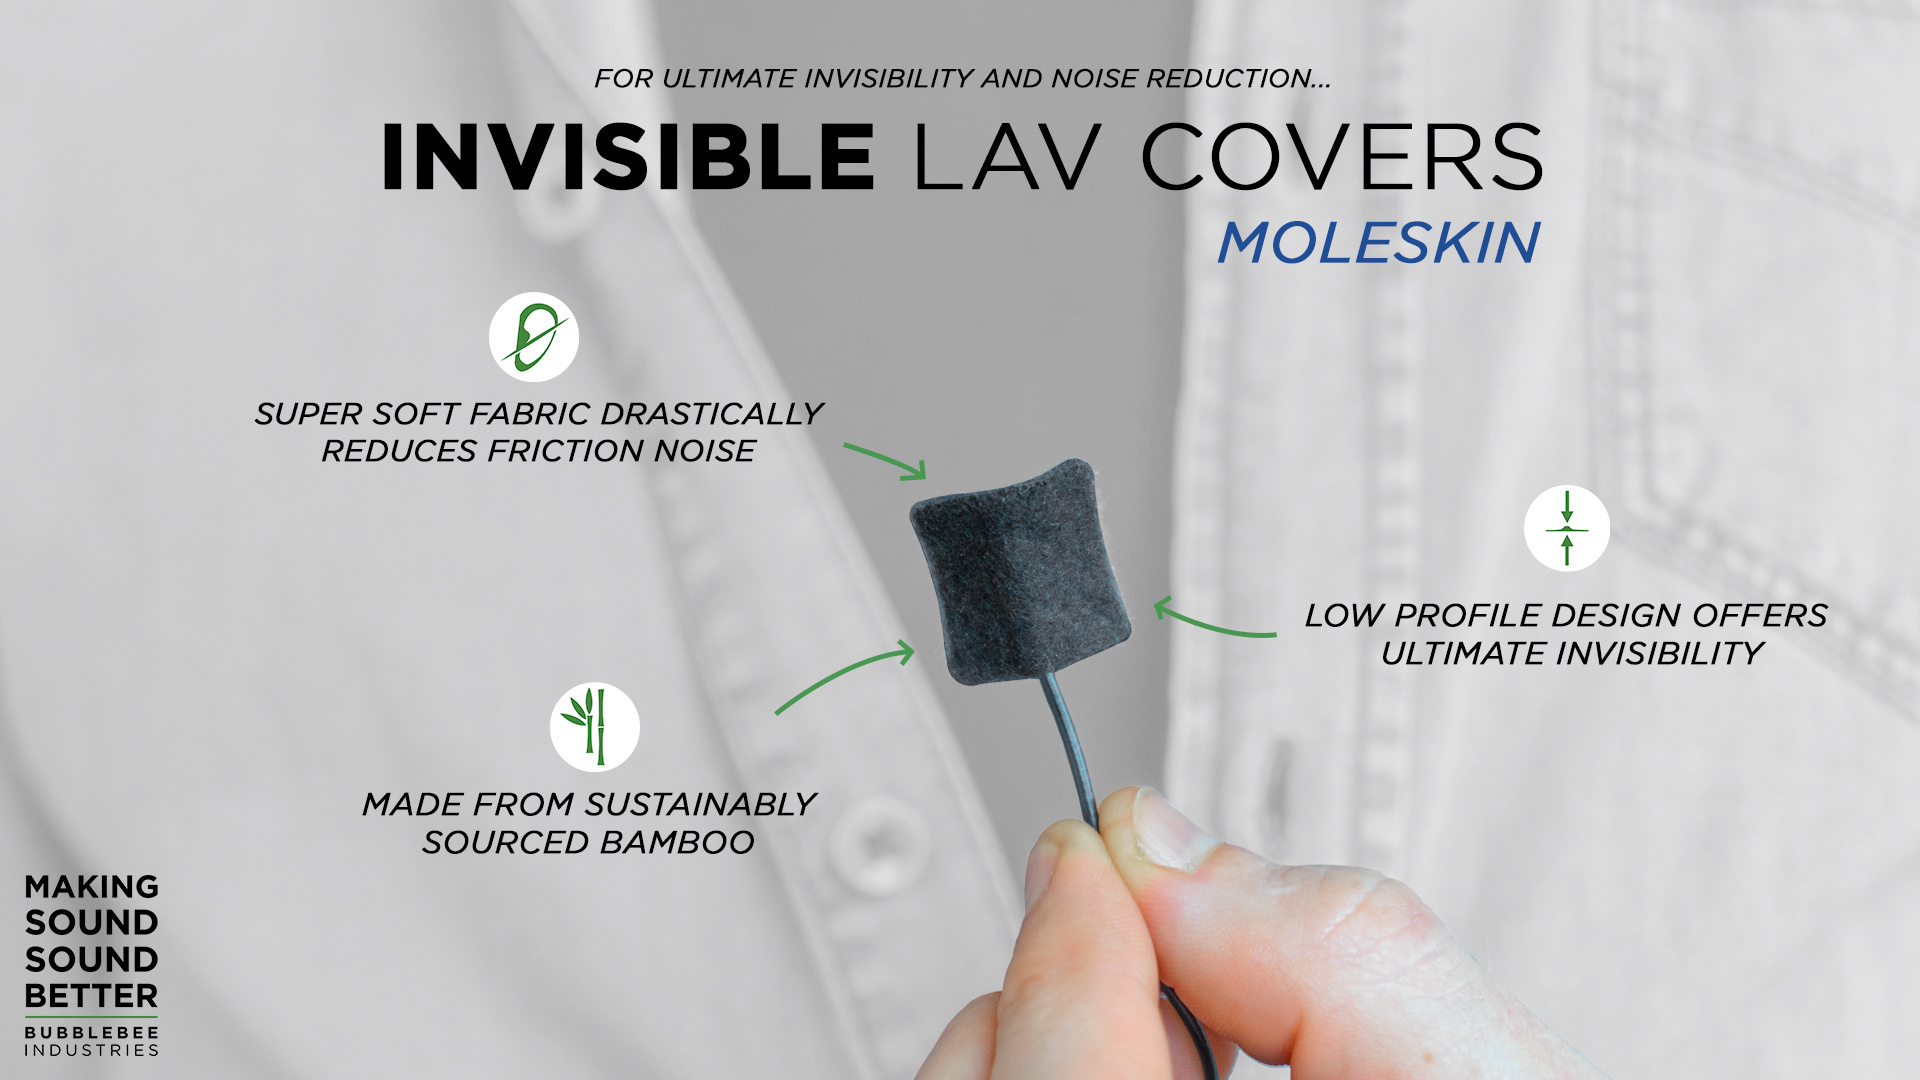 Bubblebee Industries Bubblebee Industries - Invisible Lav Covers Moleskin